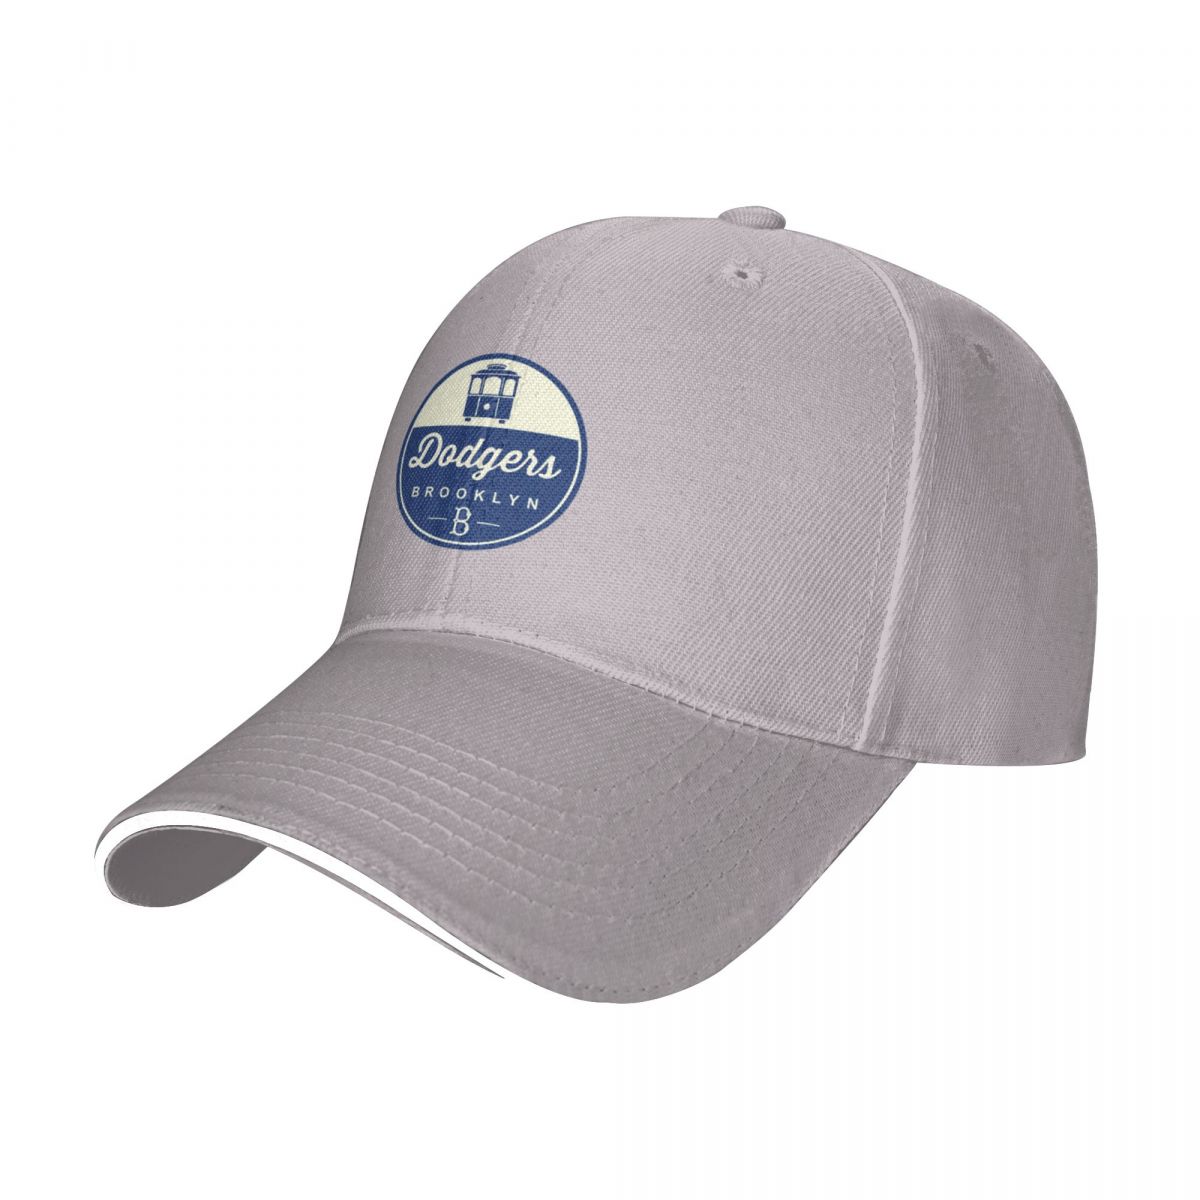 Best vendu - Classic Dodgers Brooklyn Cap Baseball Cap Hats Gentleman Hat Hat Mens Caps Women's